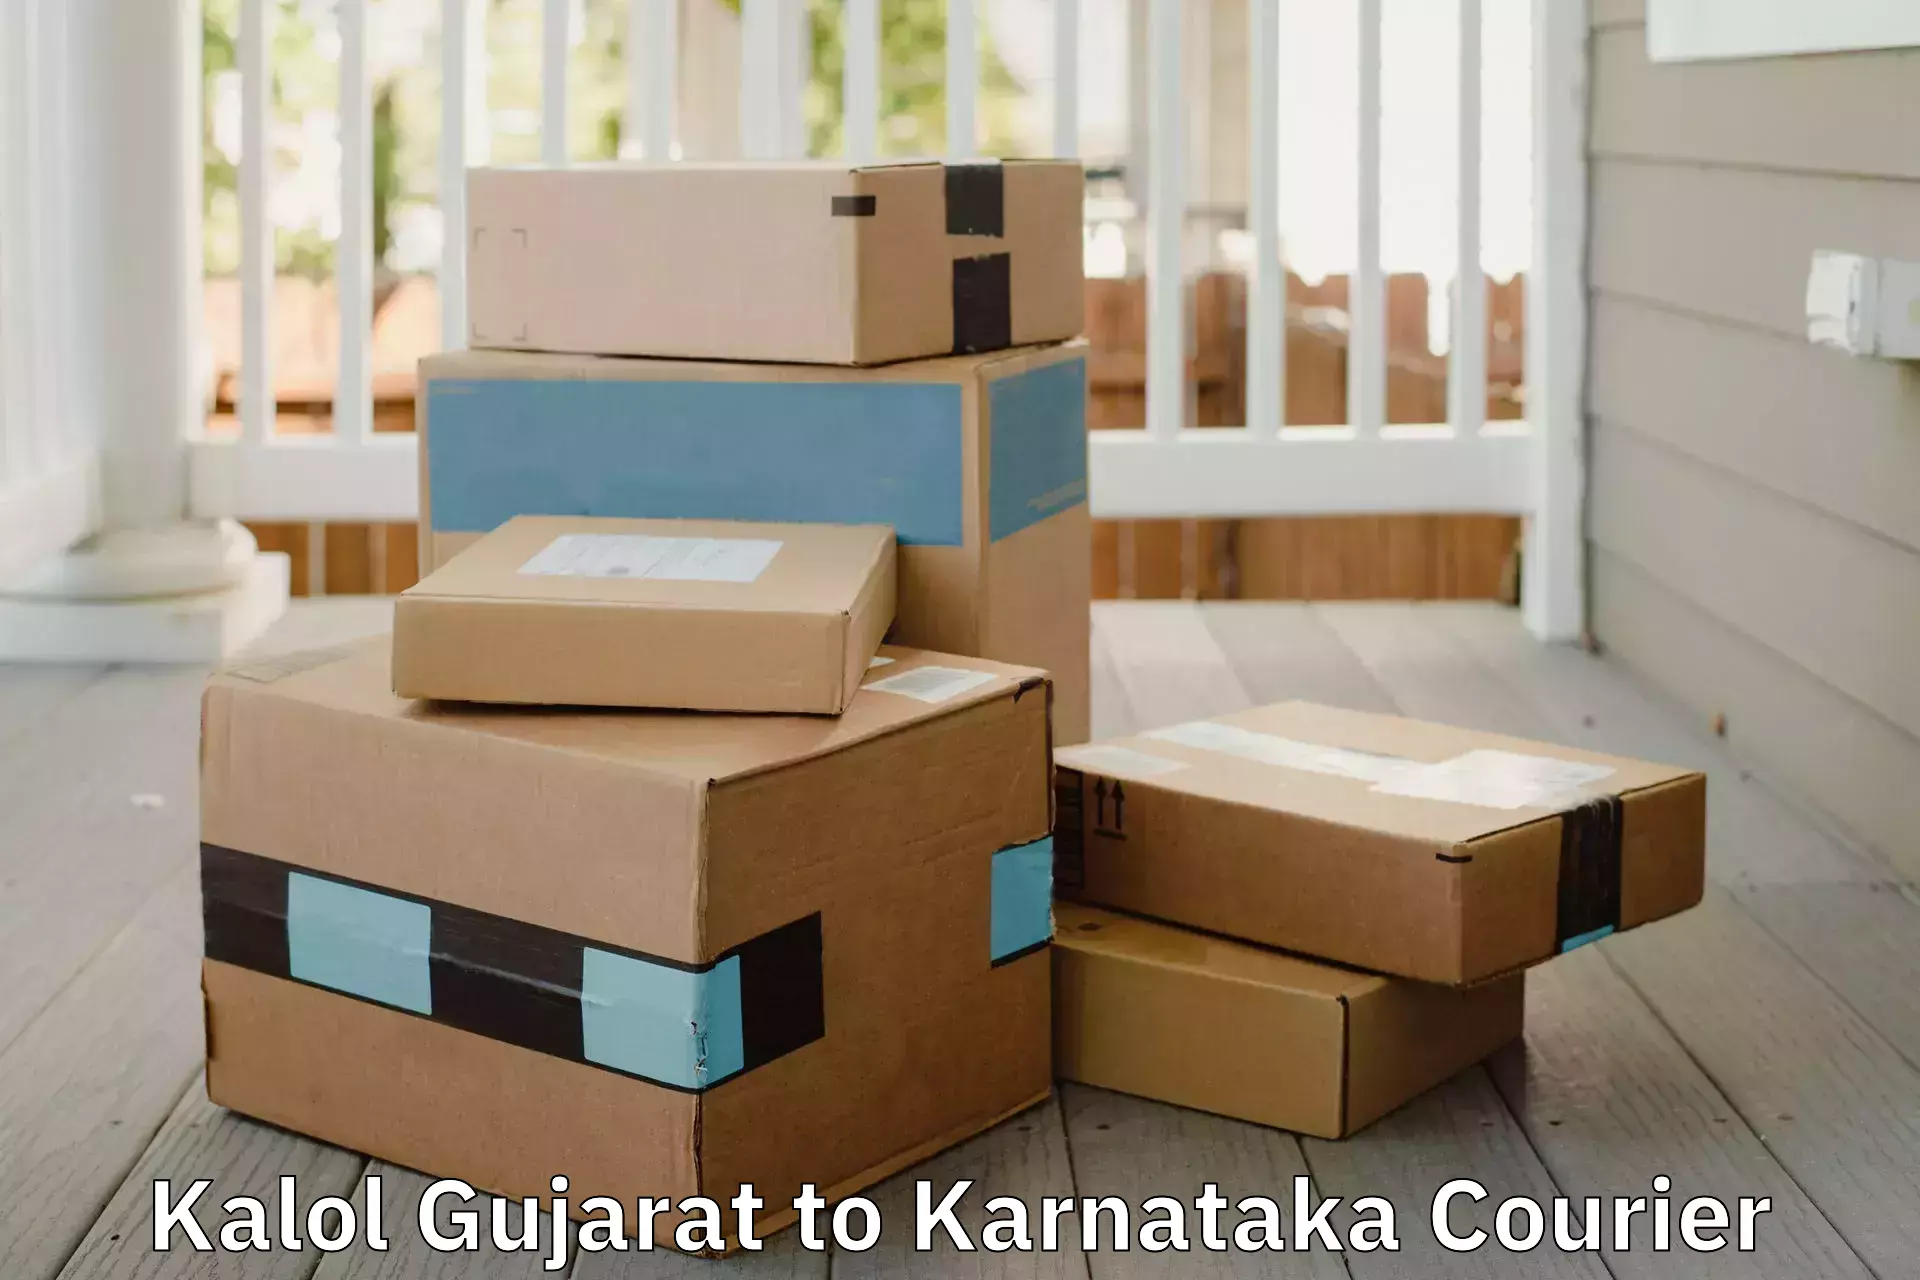 Efficient packing services Kalol Gujarat to Kanjarakatte